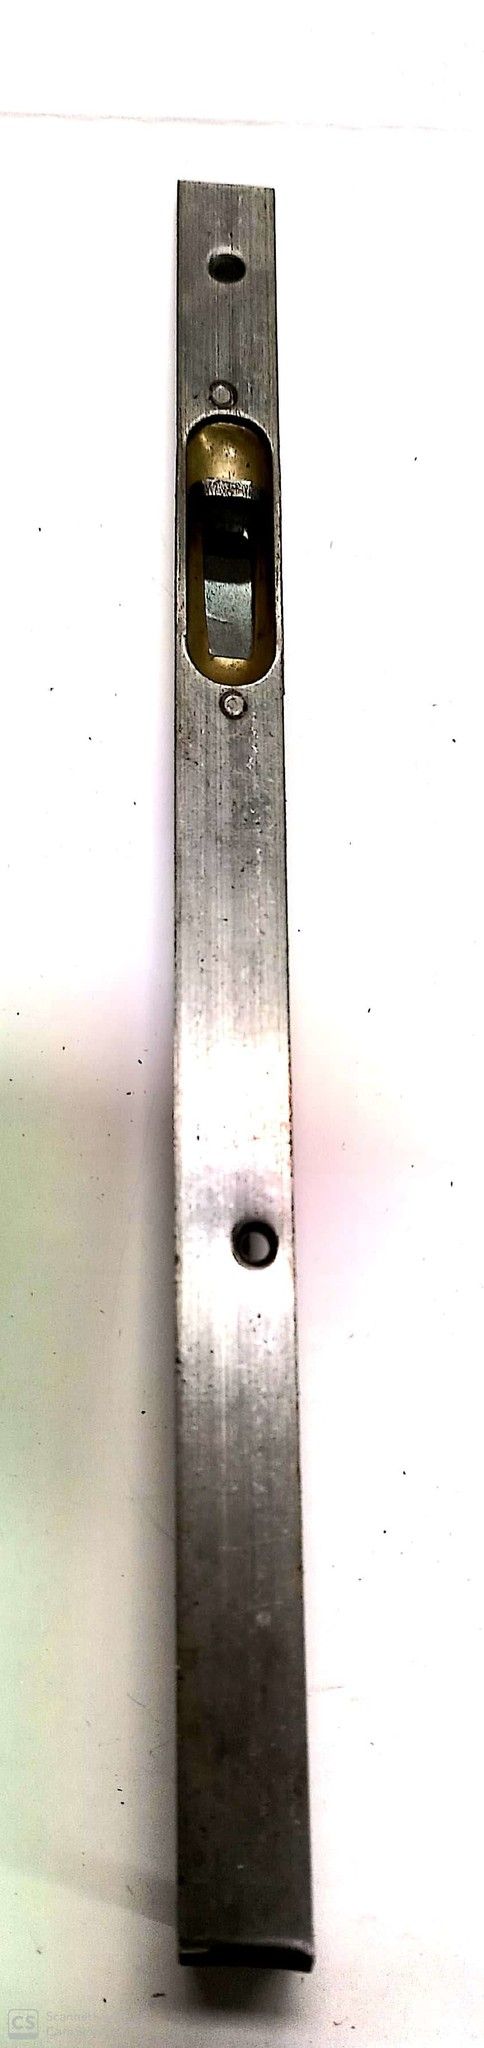 Catenaccio ad unghia cm 25 frontale mm 15 in ferro grezzo serie normale